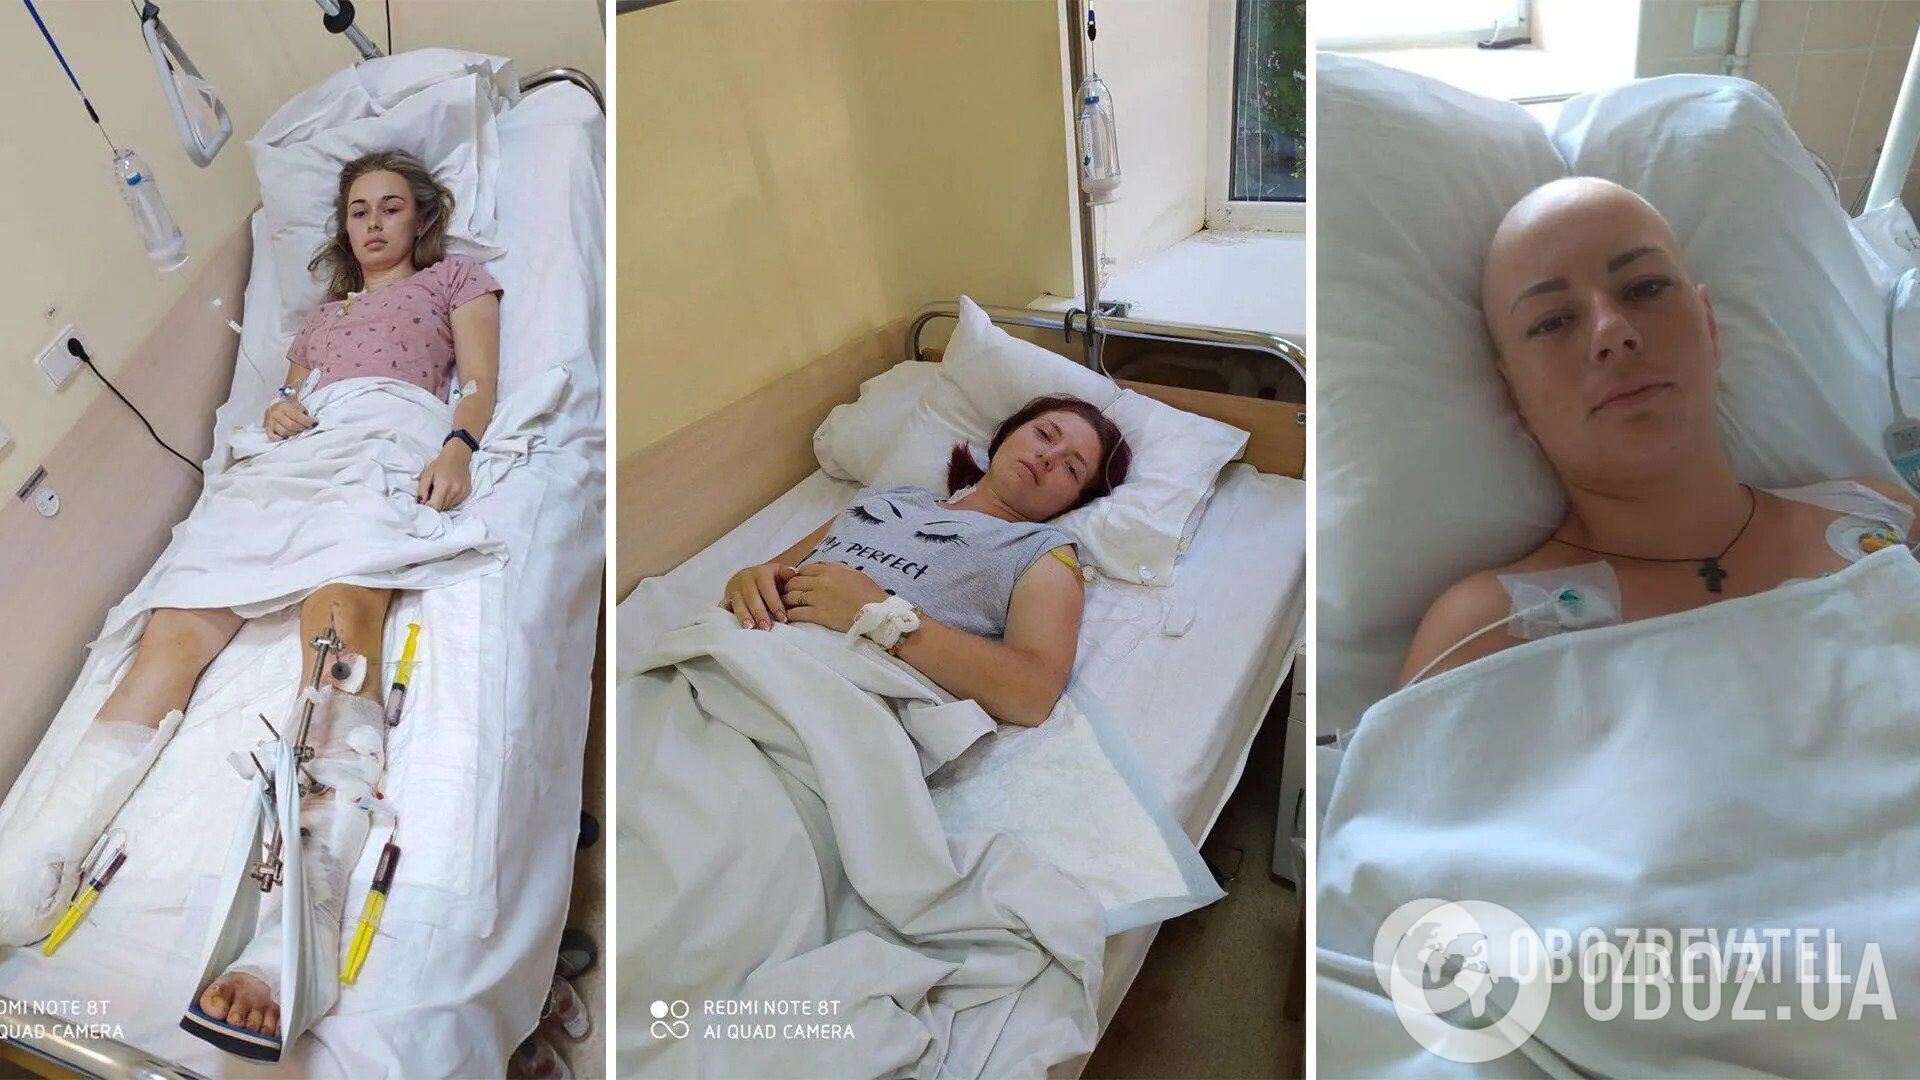 Суд вынес приговор майору, который пьяным сбил трех курсанток в Киеве: попыток наезда было несколько, две пострадавшие потеряли по ноге